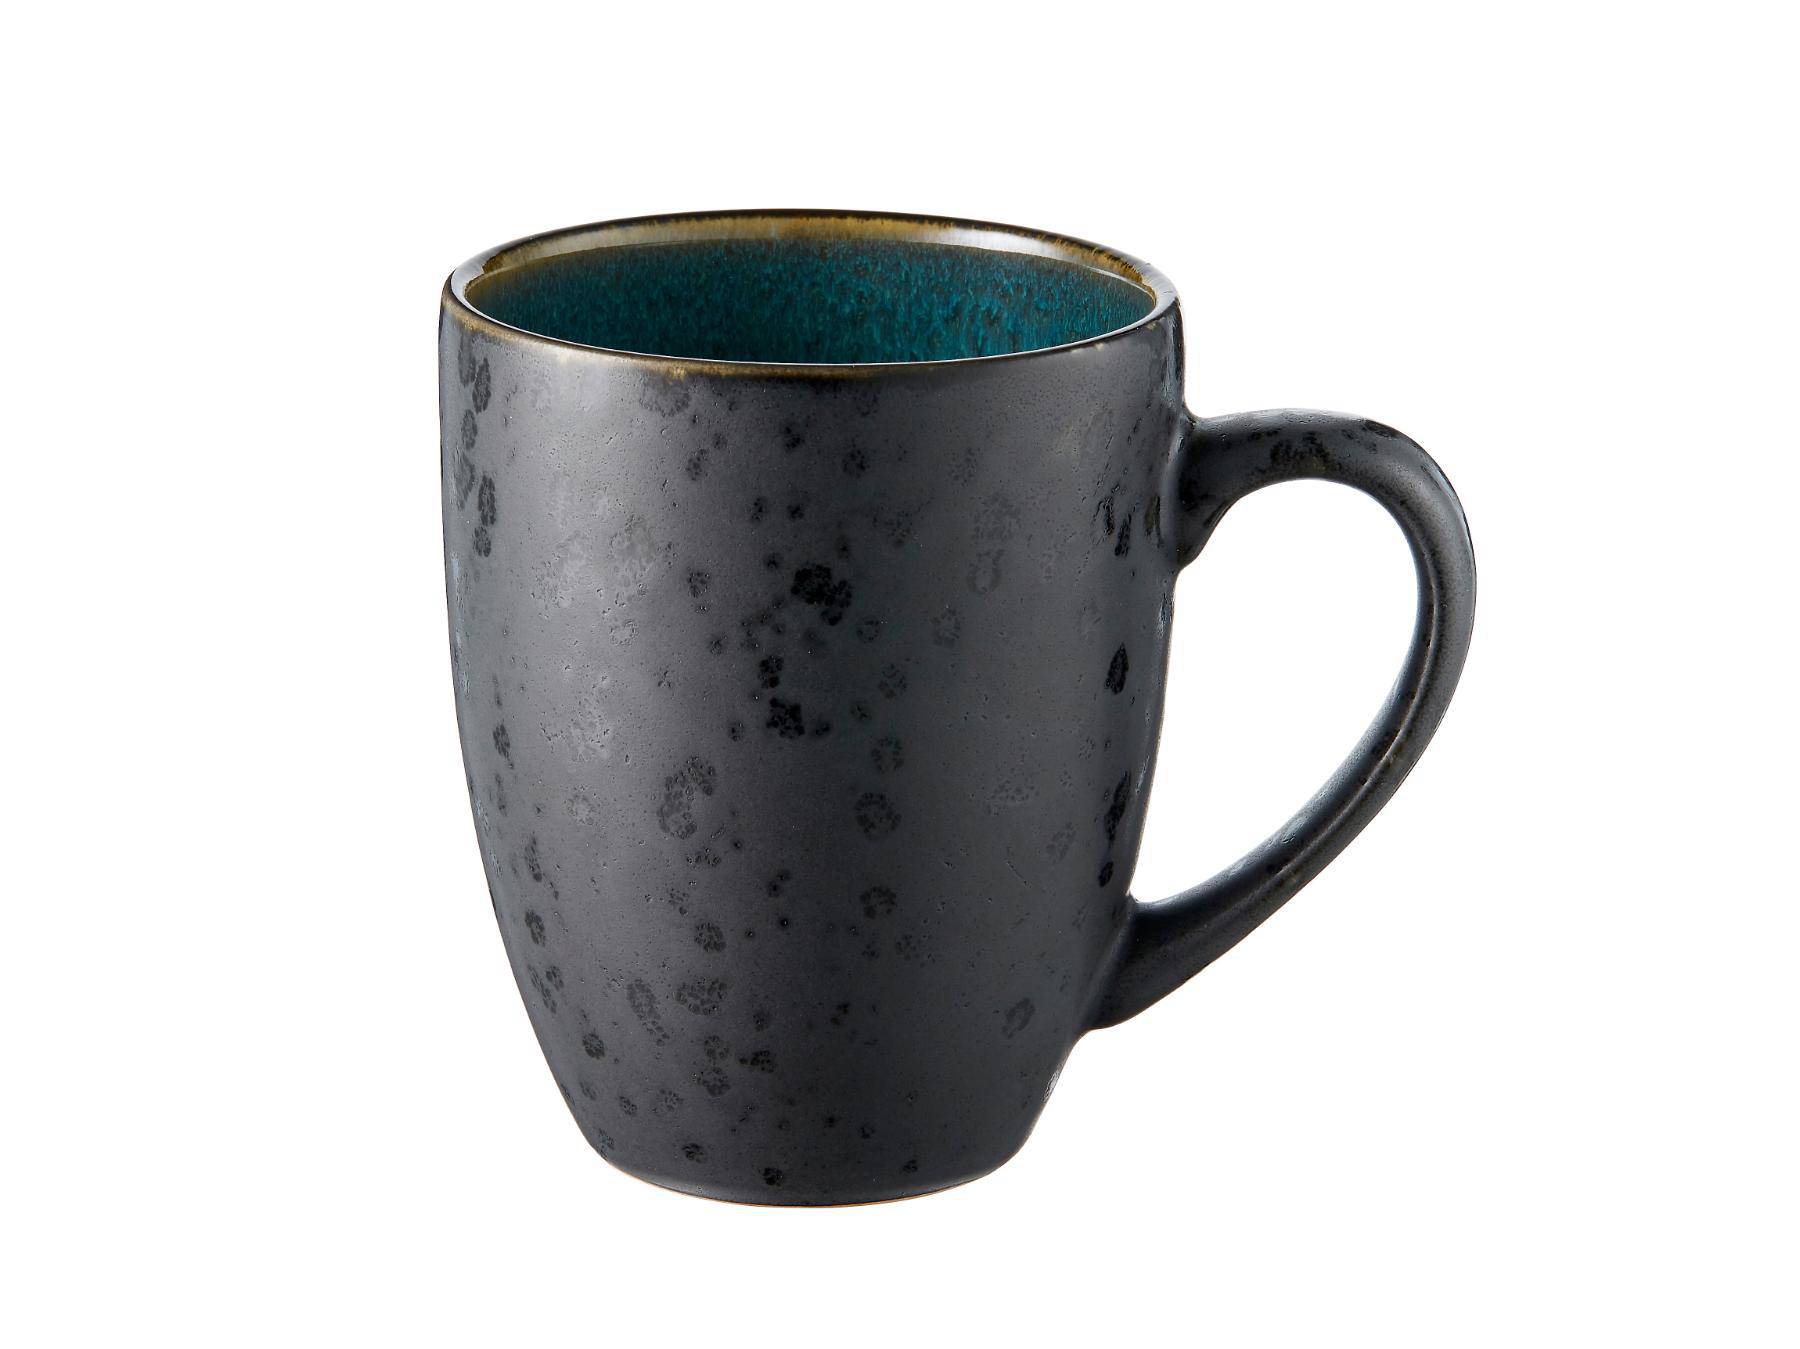 Bitz koffie / thee) mok (300ml) van zwart aardewerk met (donker) gekleurde binnenkant (4-Delig) - Accessoire Loods